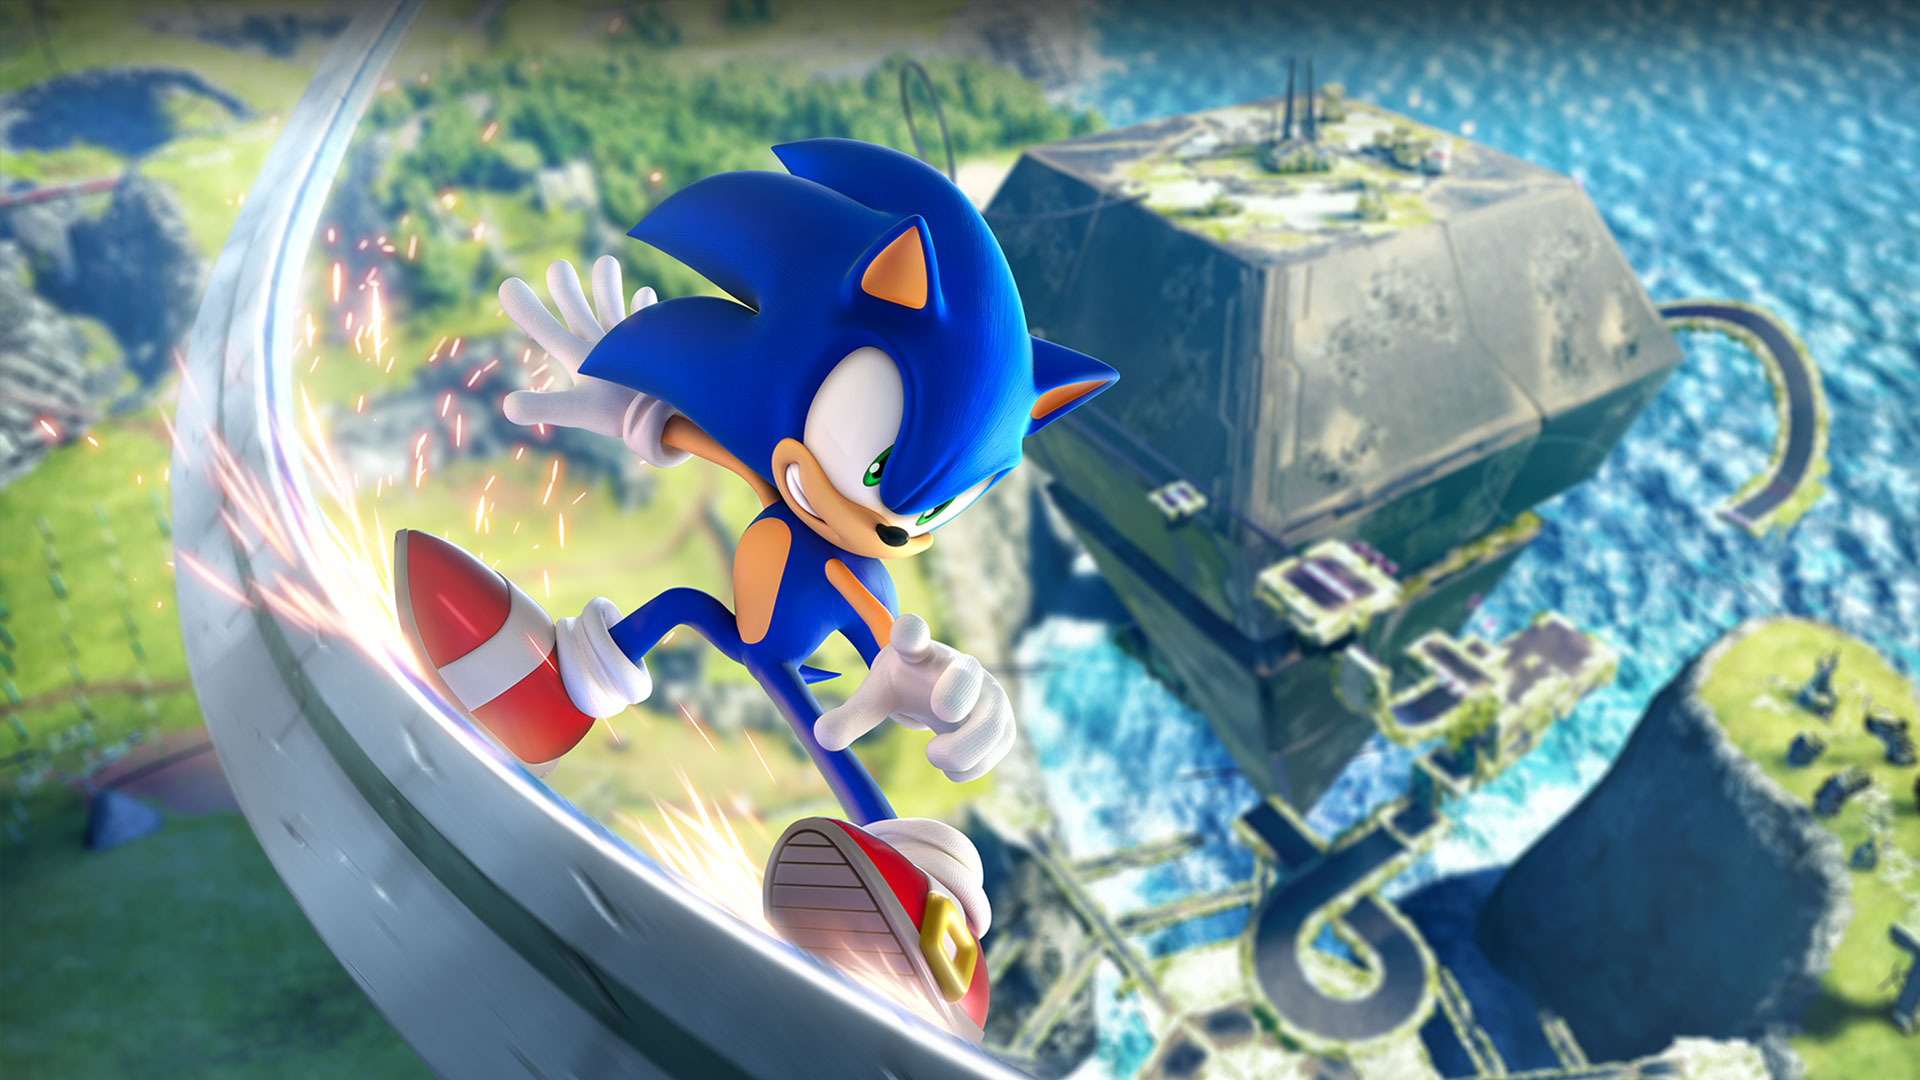 Sonic glisse sur un rail à grande vitesse bien au-dessus de la zone verte.